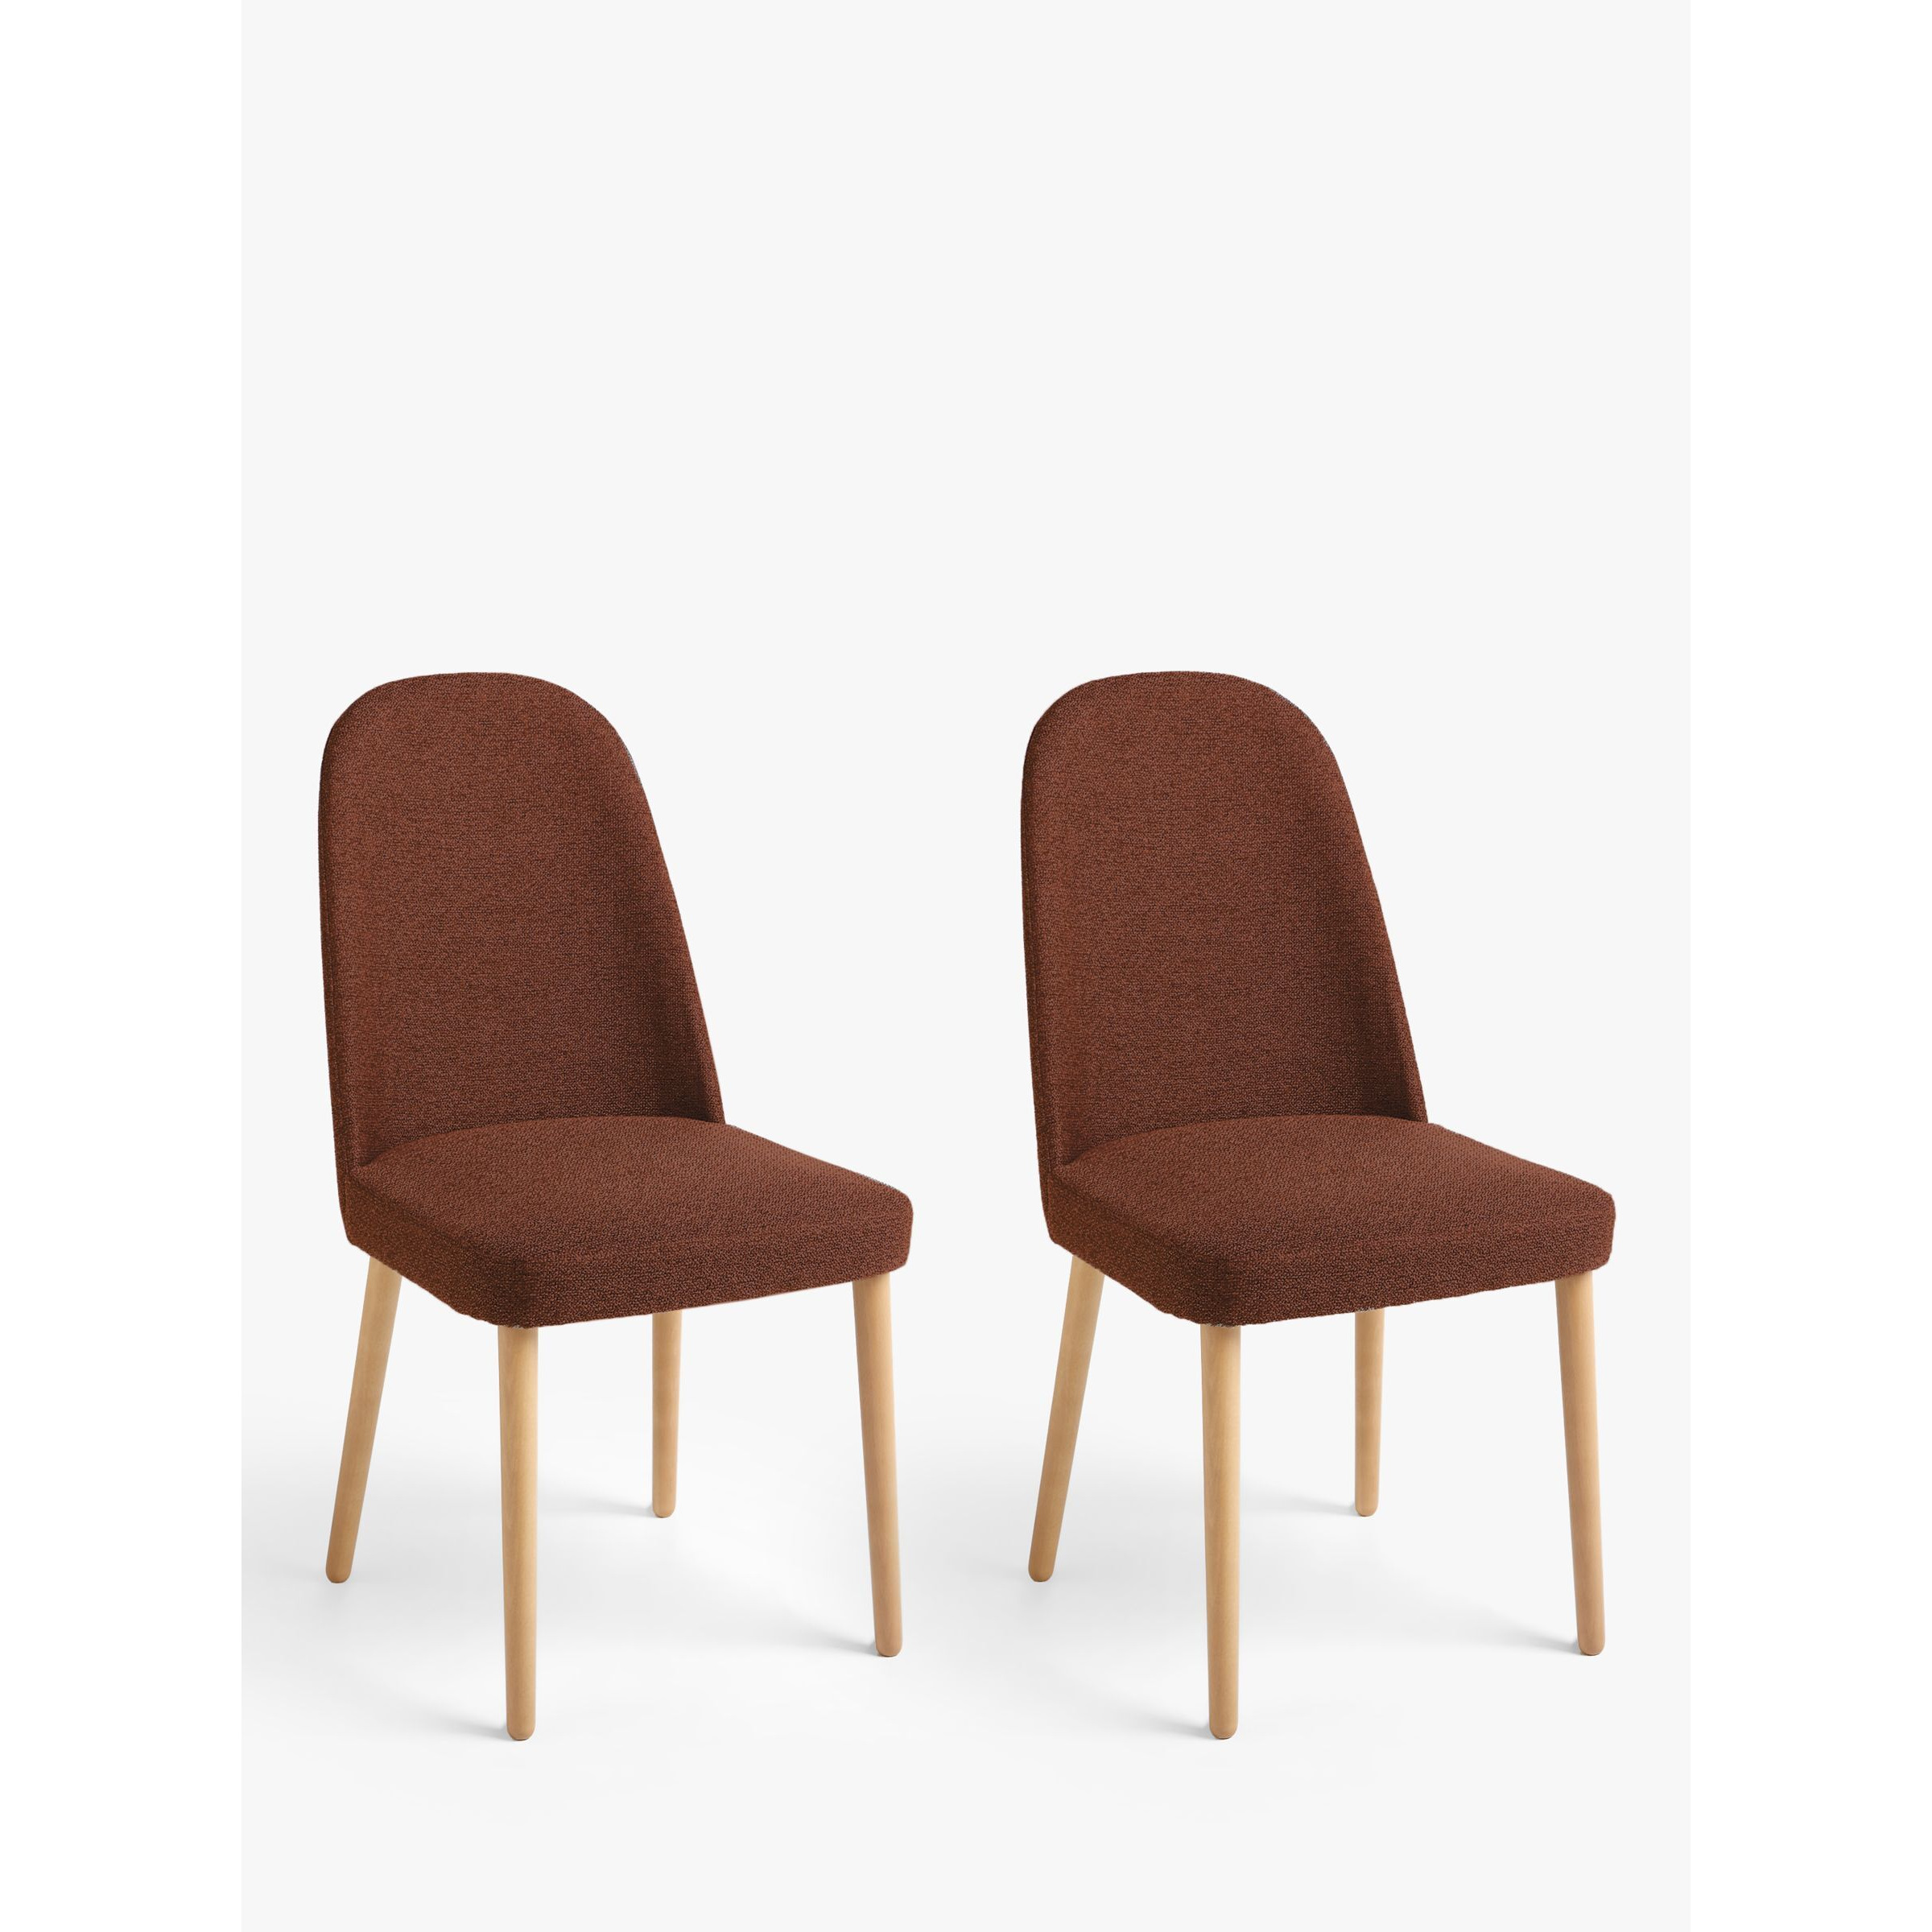 John Lewis Seek Dining Chairs, Set of 2 - image 1